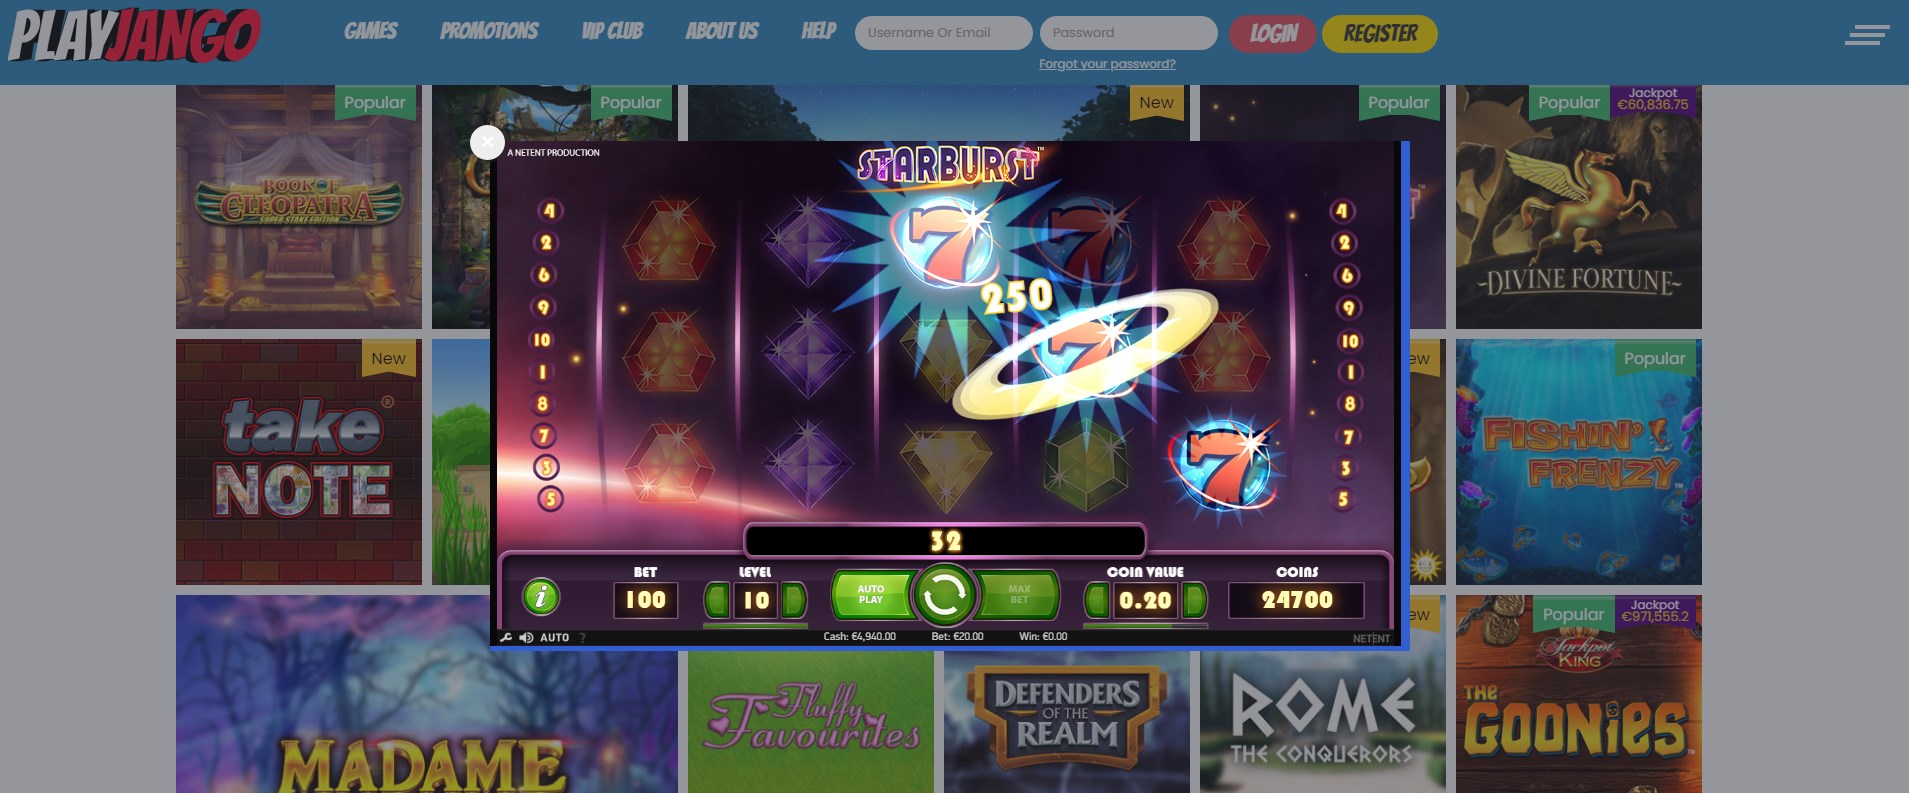 PlayJango Casino Slot Games